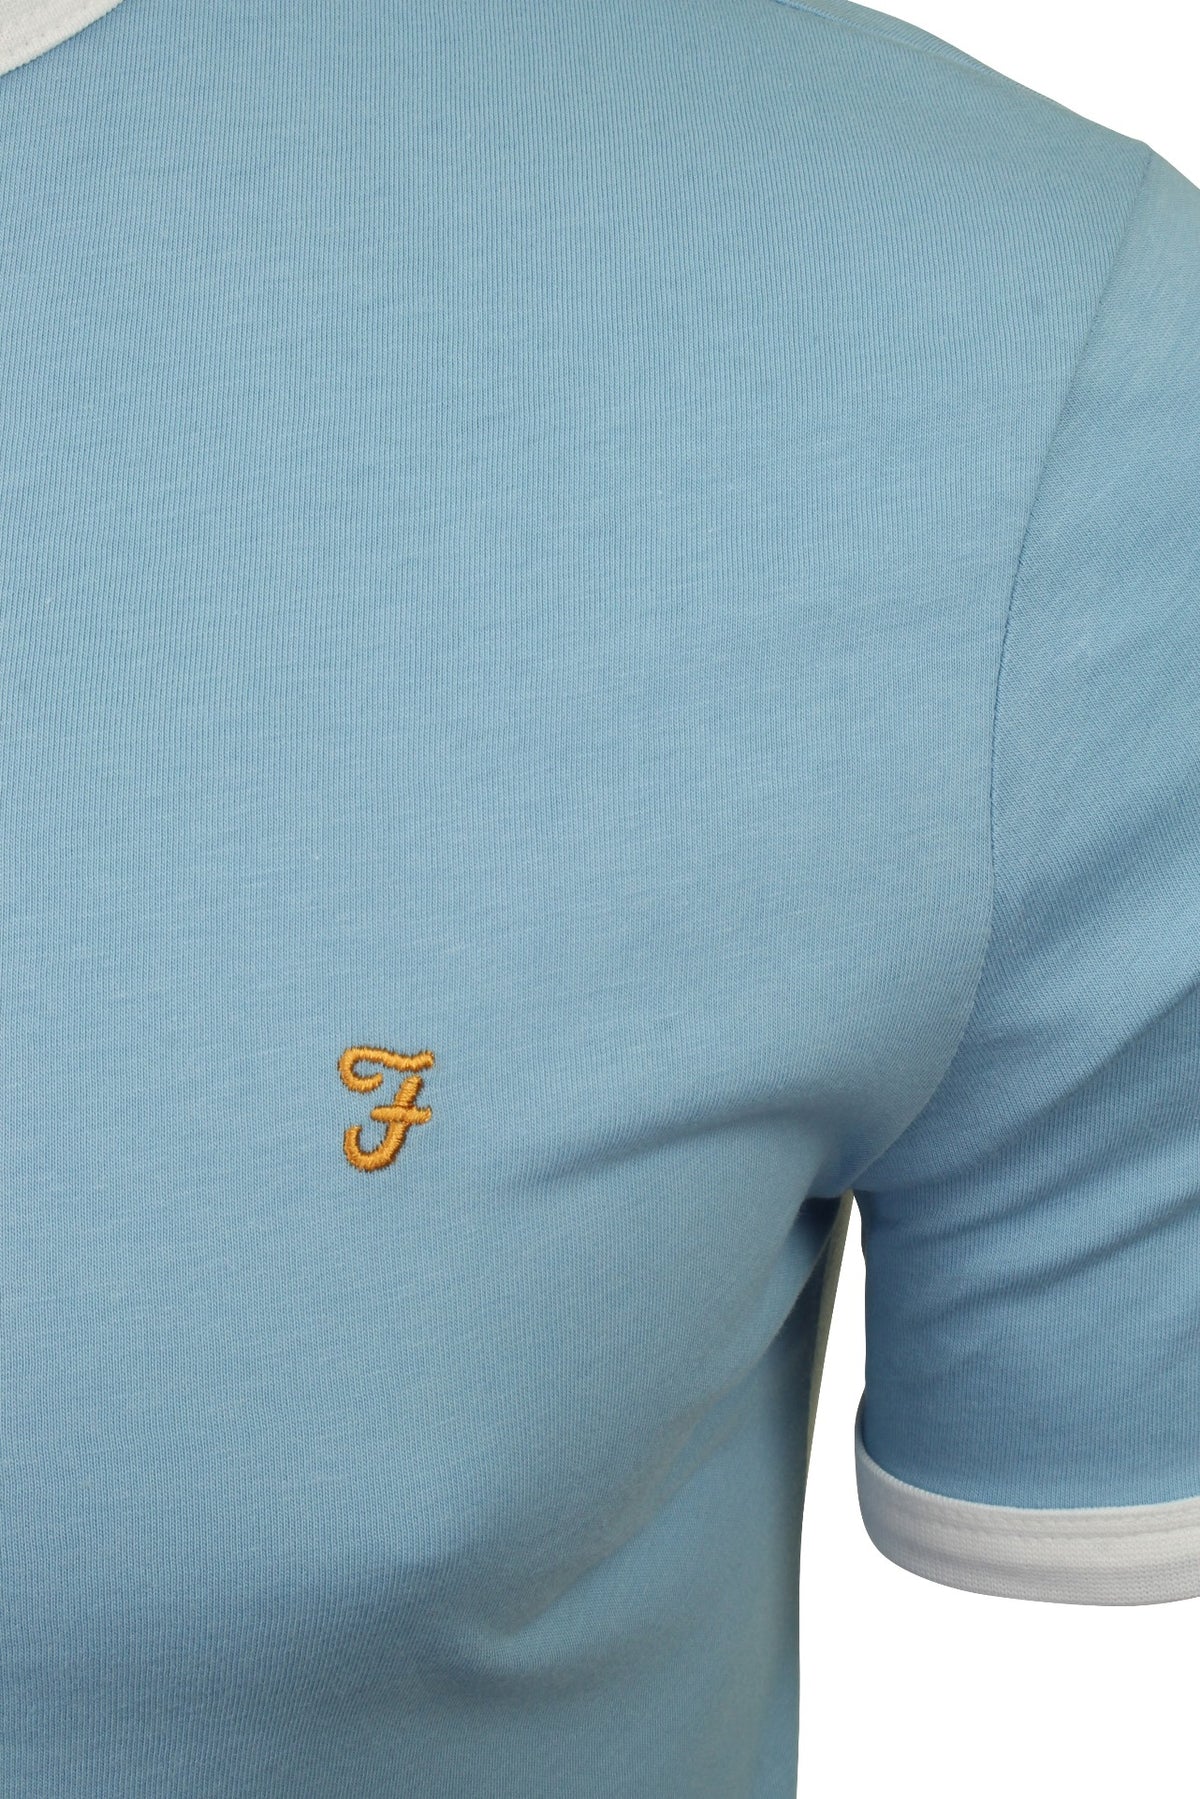 Farah Mens Crew Neck T-Shirt 'Groves Ringer Tee' - Short Sleeved, 02, F4KS60H9GP, Moonstone